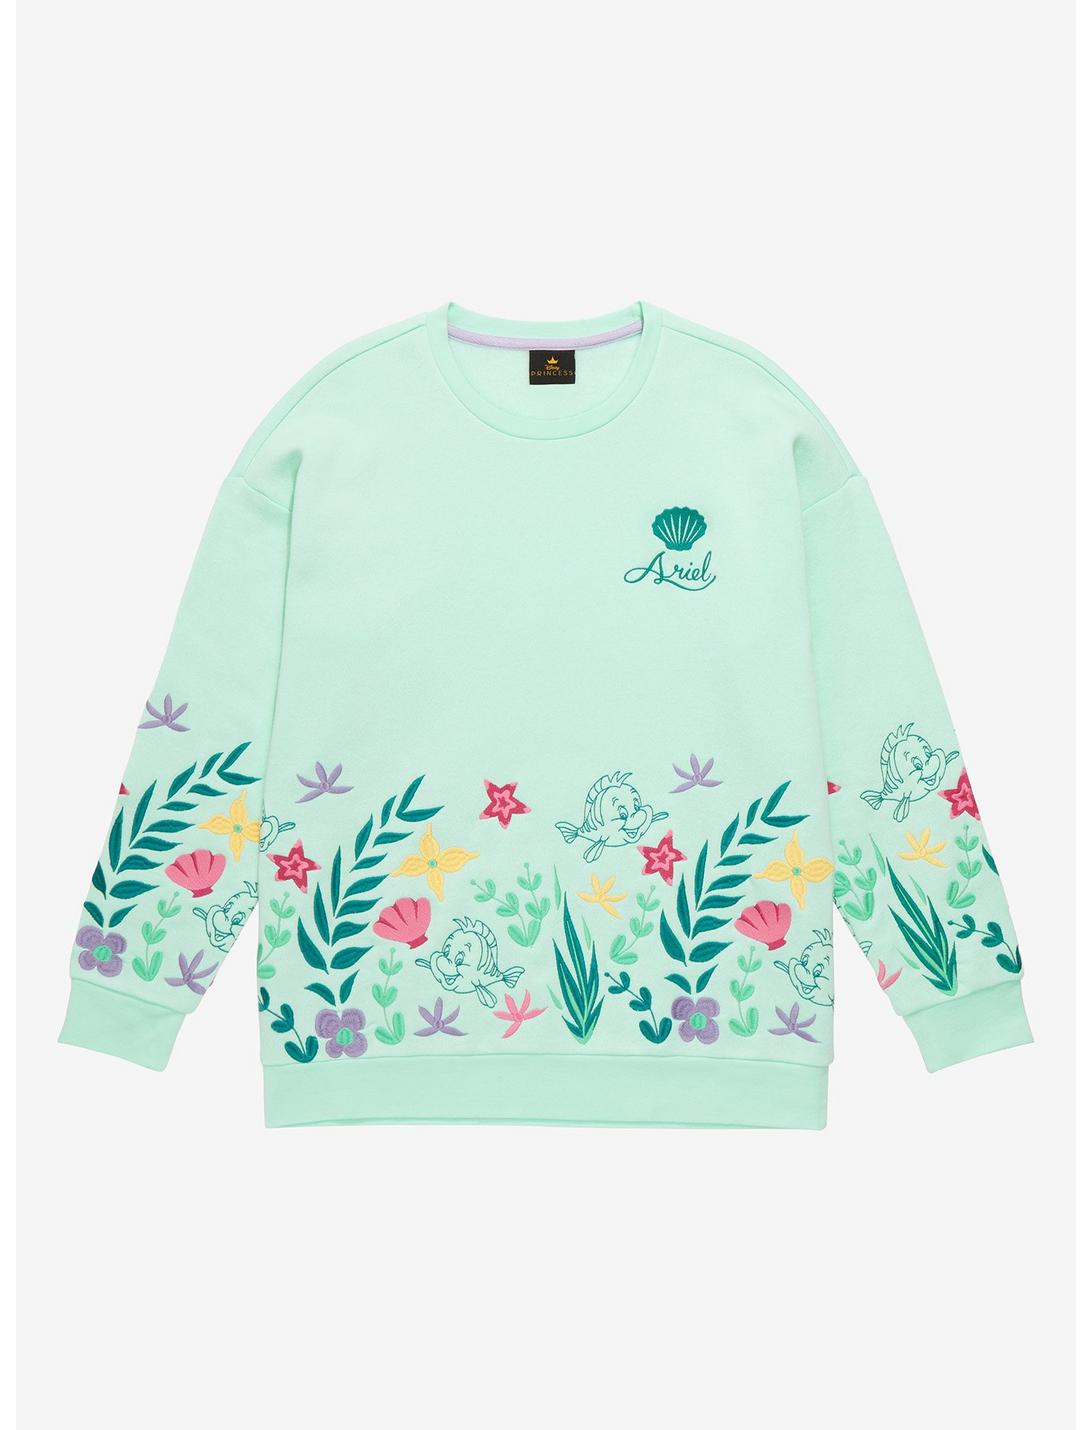 Disney The Little Mermaid Flounder Floral Sweatshirt, SEA FOAM, hi-res